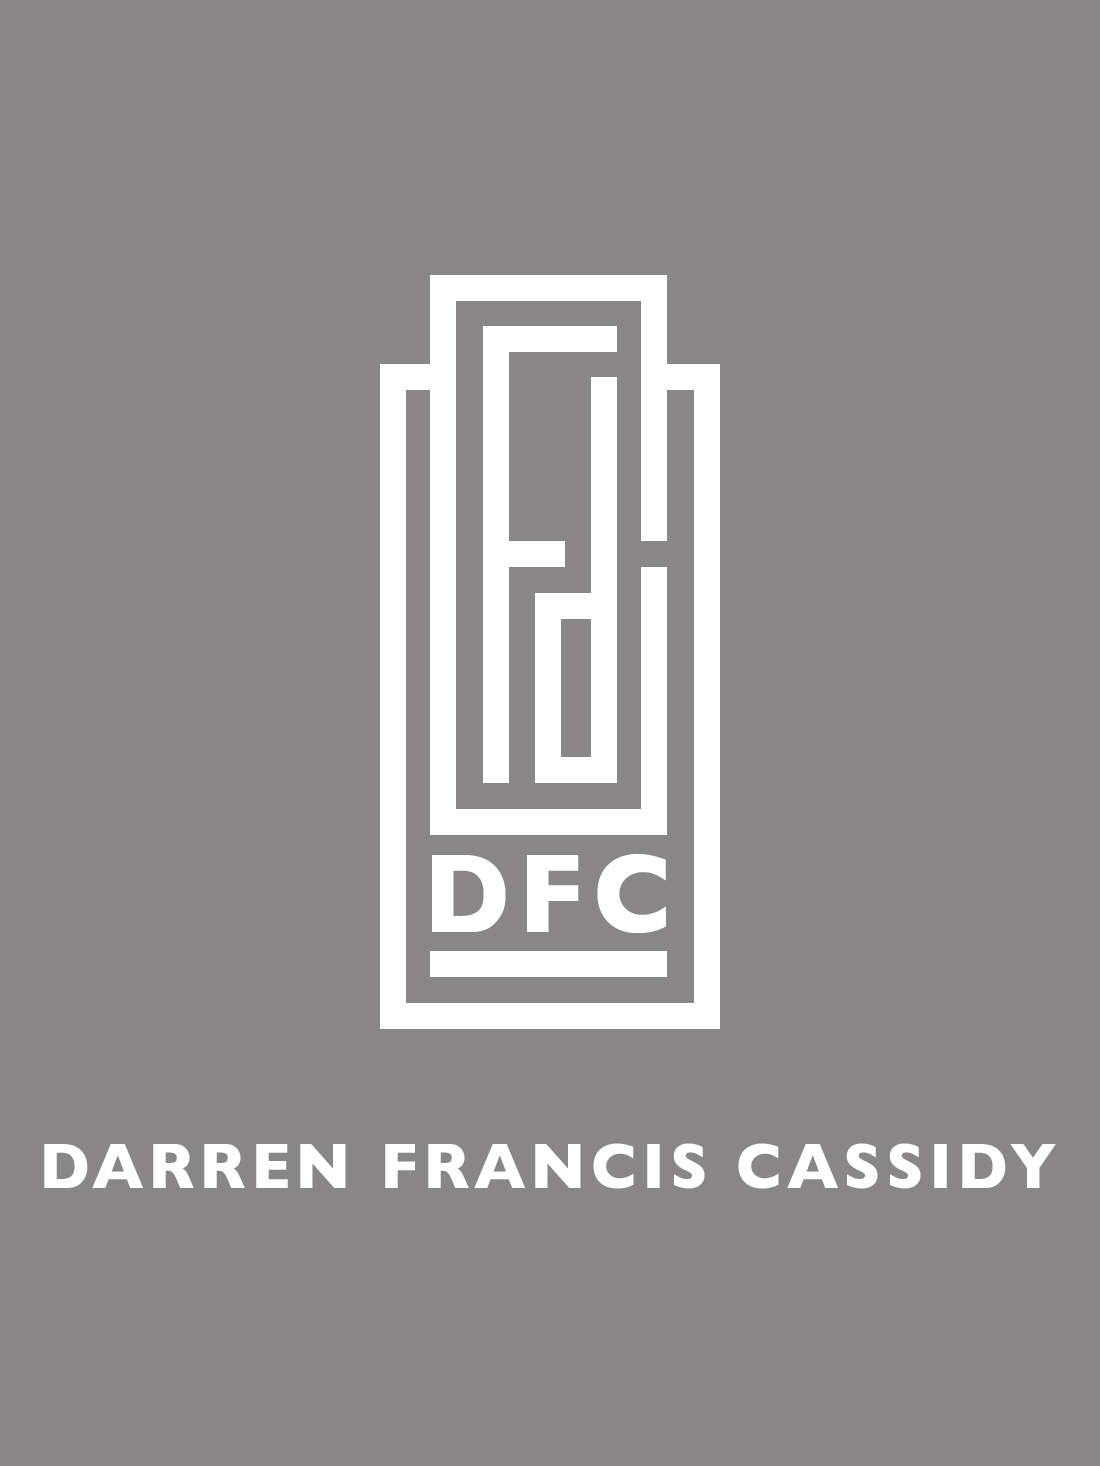 Darren Francis Cassidy